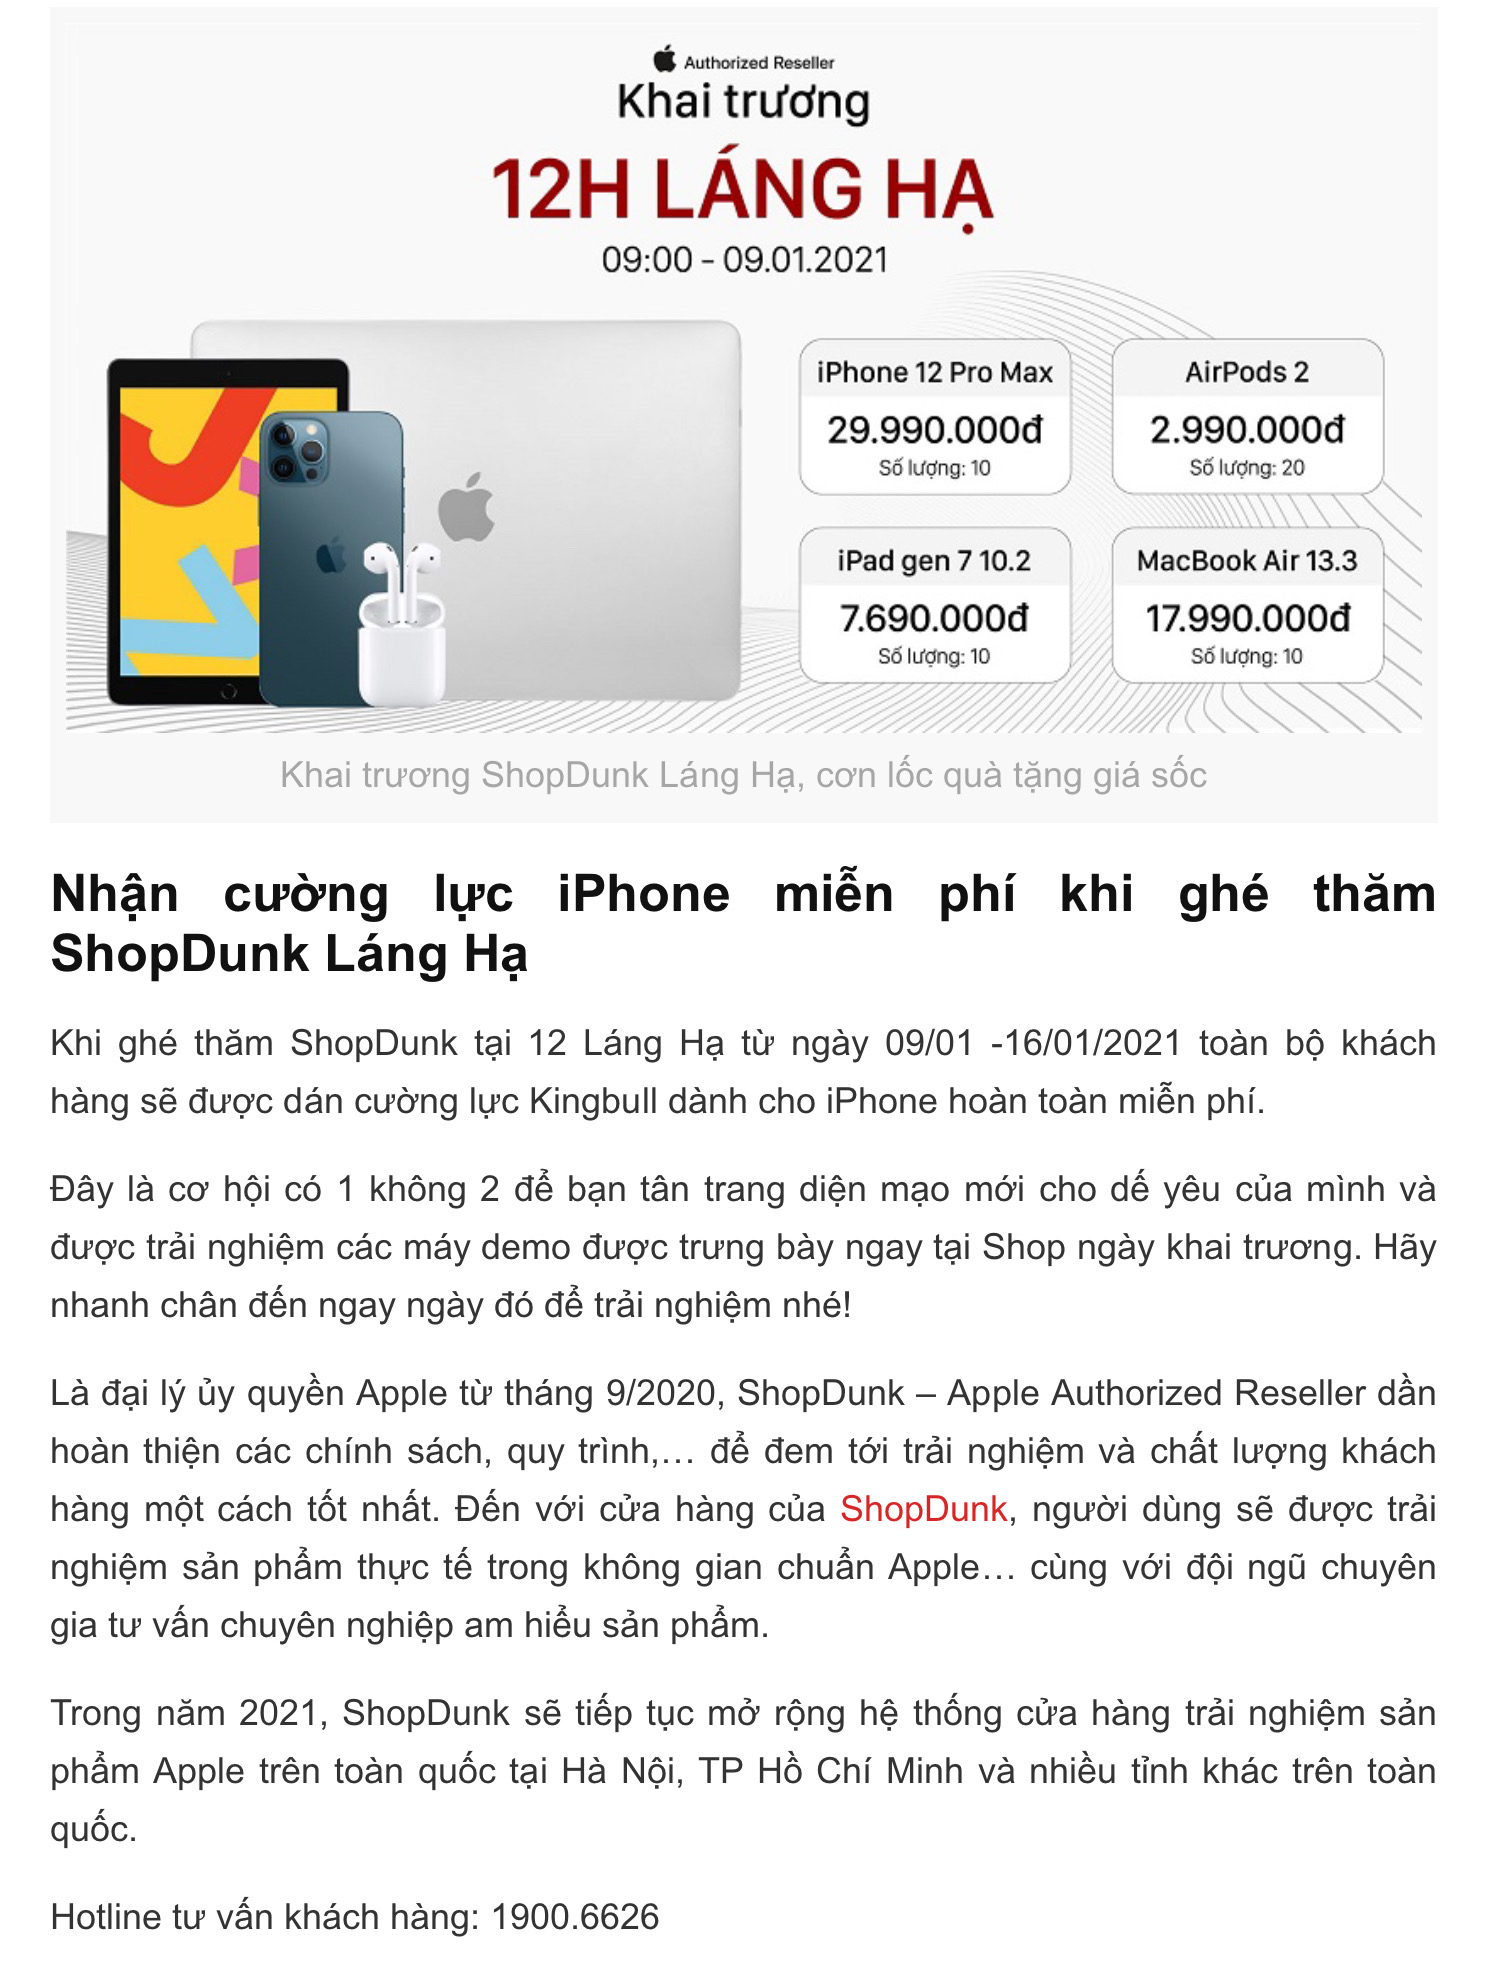 Hôm nay 11/1/2021 mình đã đi check-in ShopDunk Láng Hạ, được dán màn hình iPhone 11 "KingBull" miễn